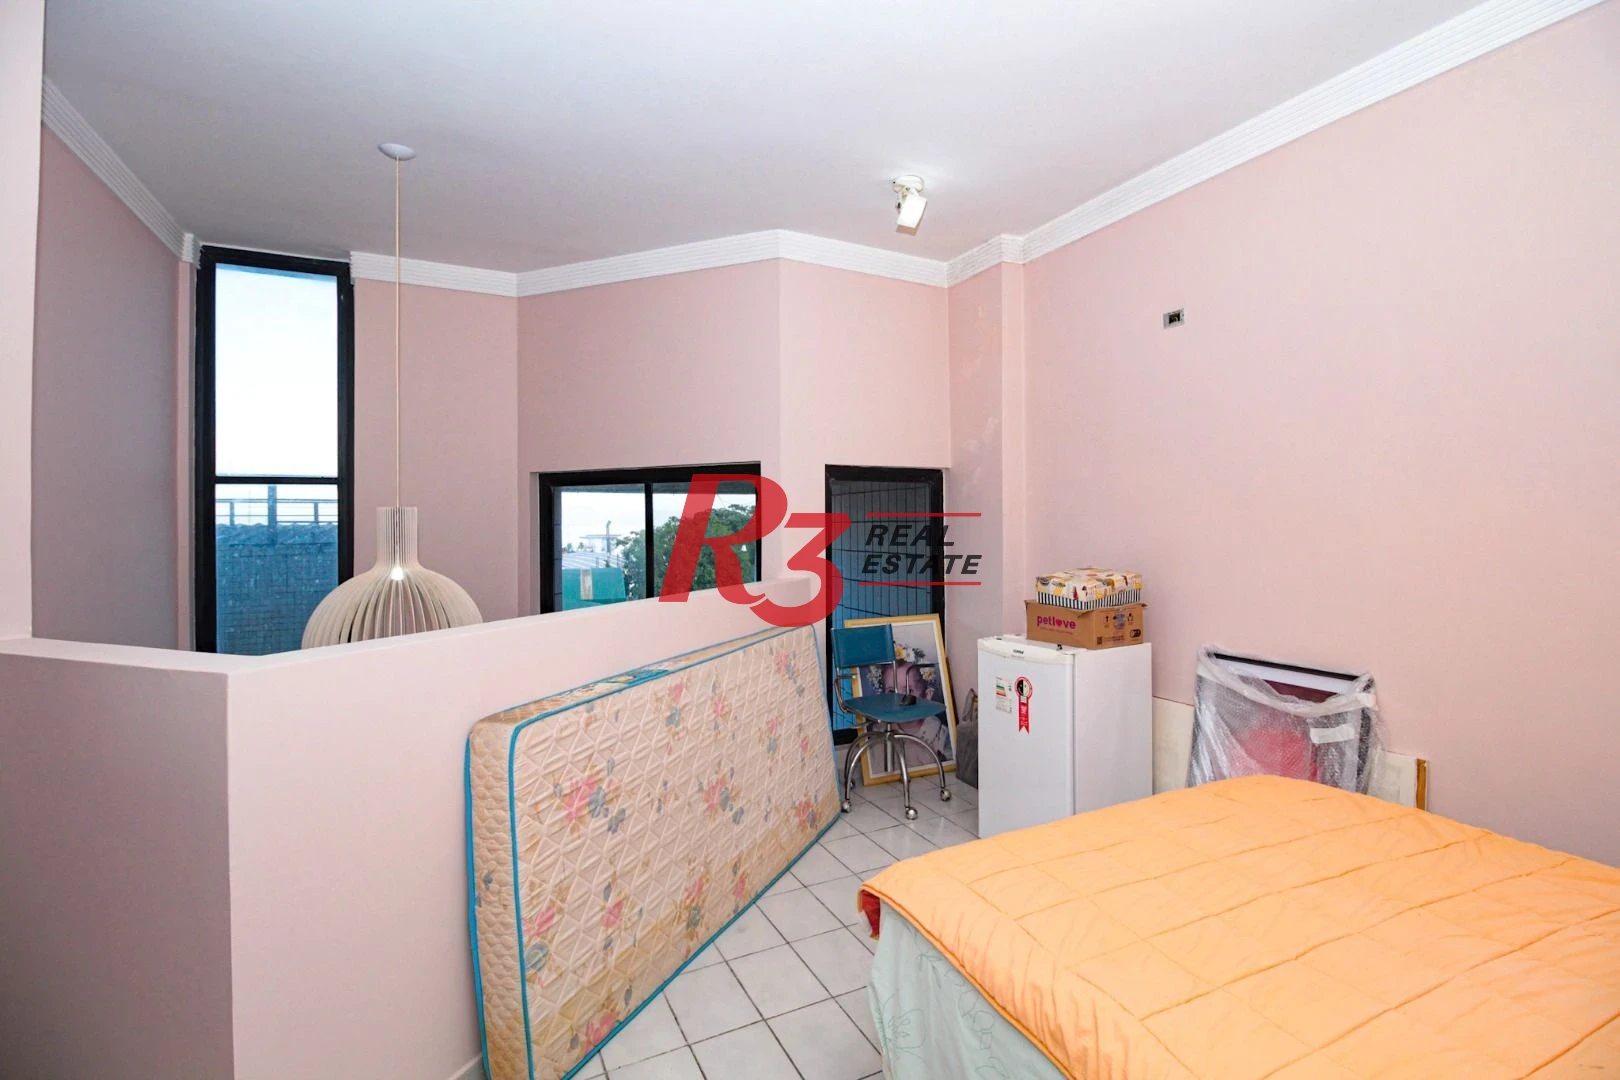 Flat de 2 dormitórios para locação na Ponta da Praia.